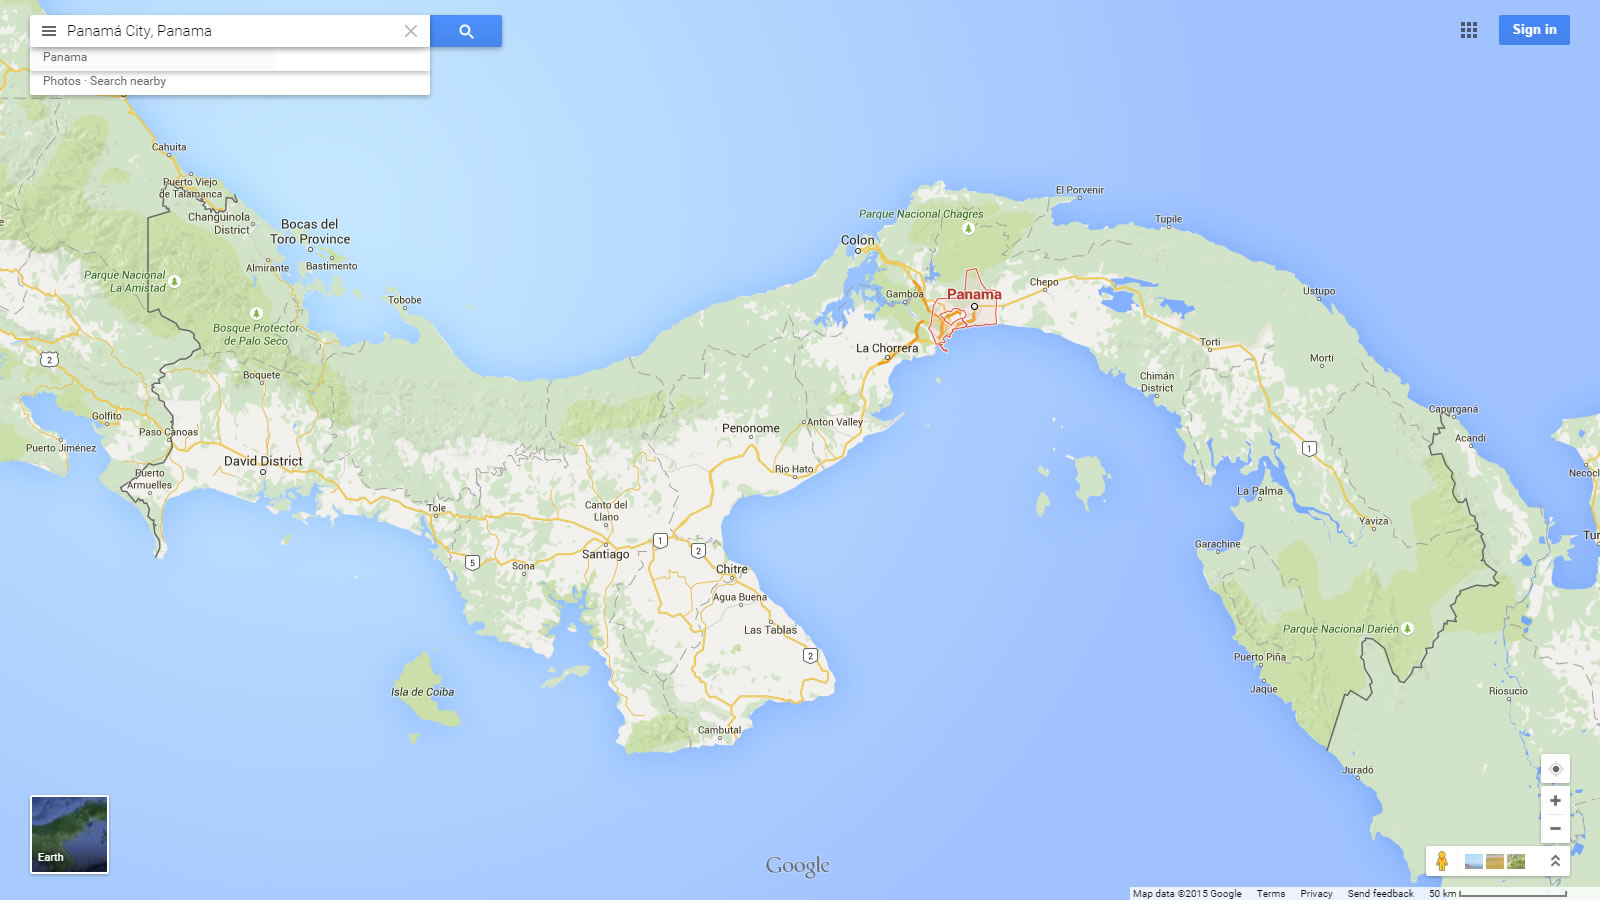 panama city panama google map